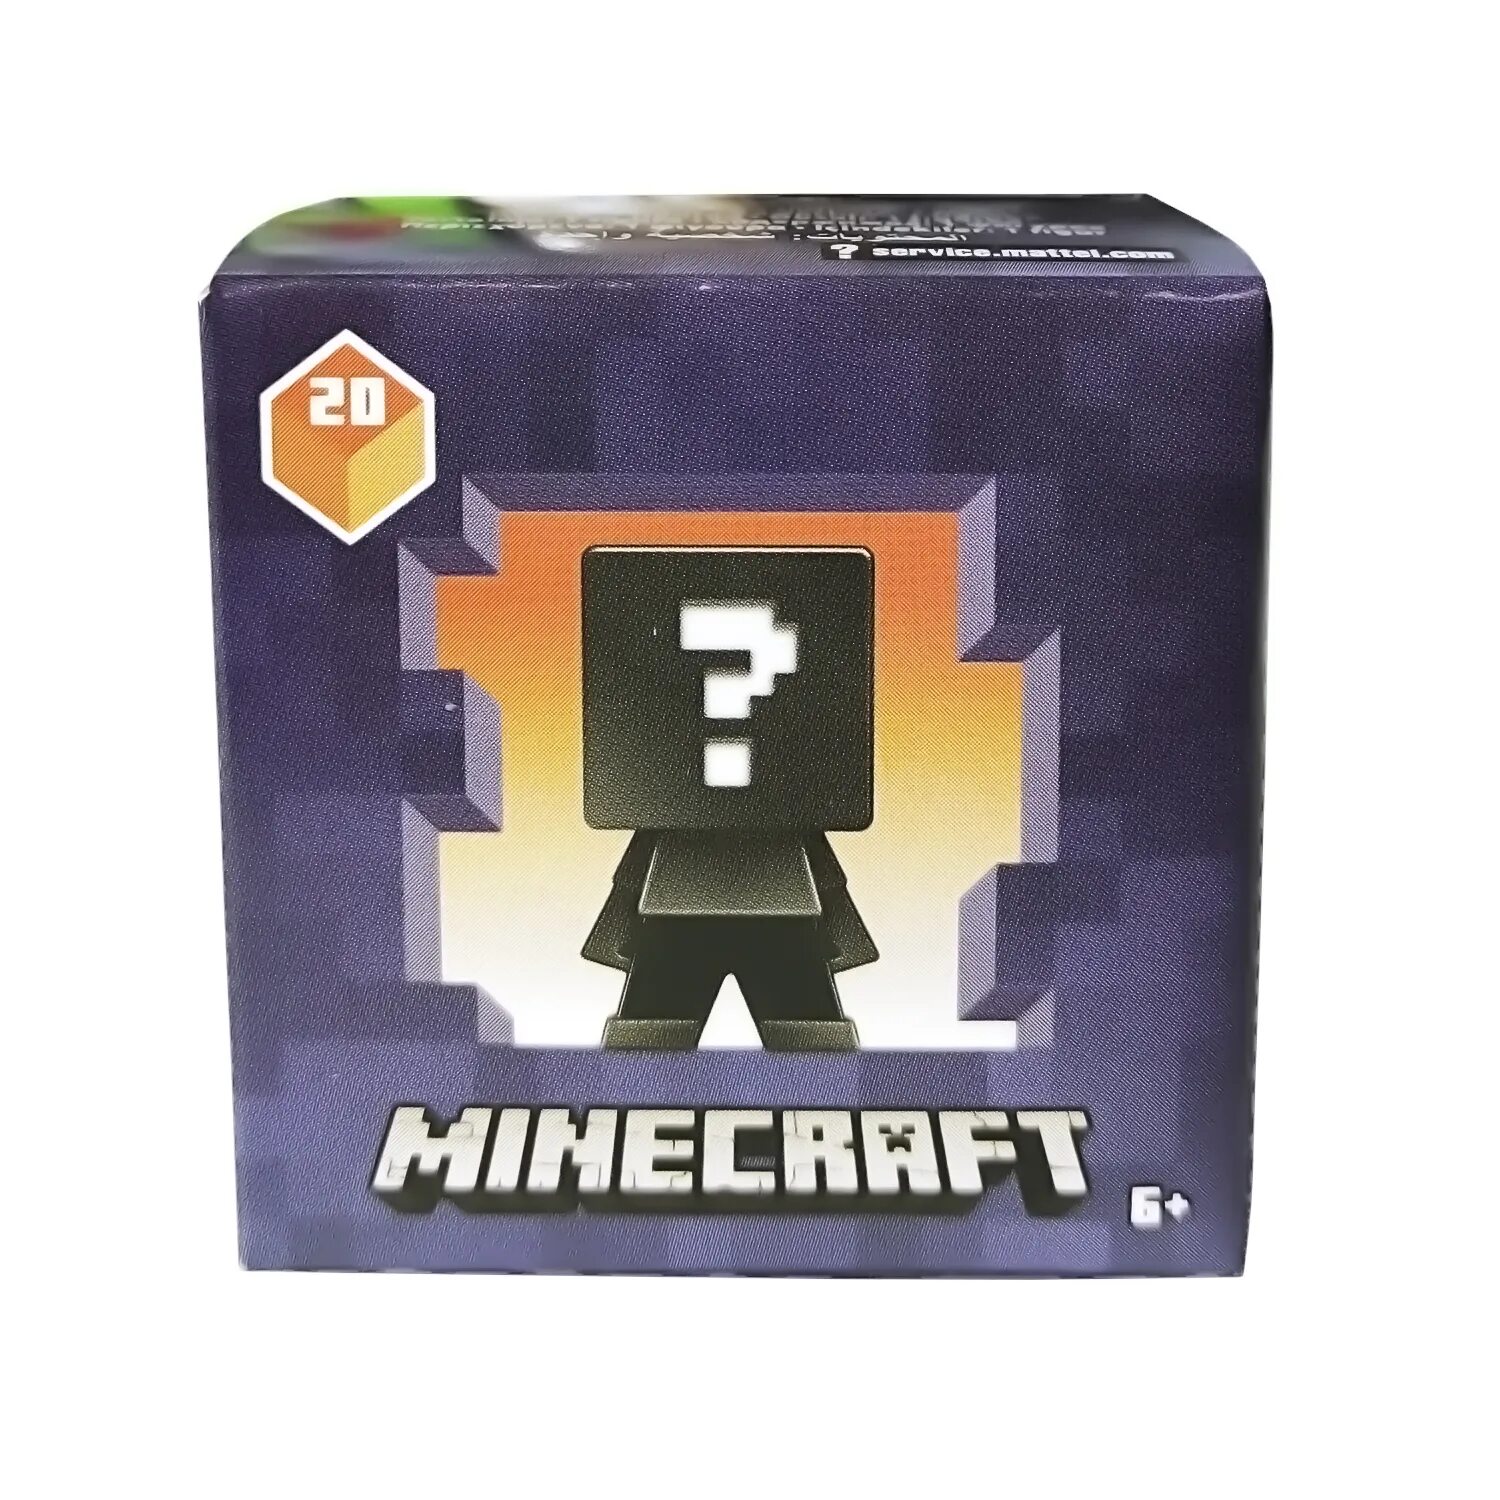 Купить майнкрафт данженс. Мини-фигурка Minecraft в непрозрачной упаковке (сюрприз) fxt80. Мини фигурка Minecraft fxt80. Майнкрафт Dungeons фигурки мини. Минифигурки майнкрафт Mattel.